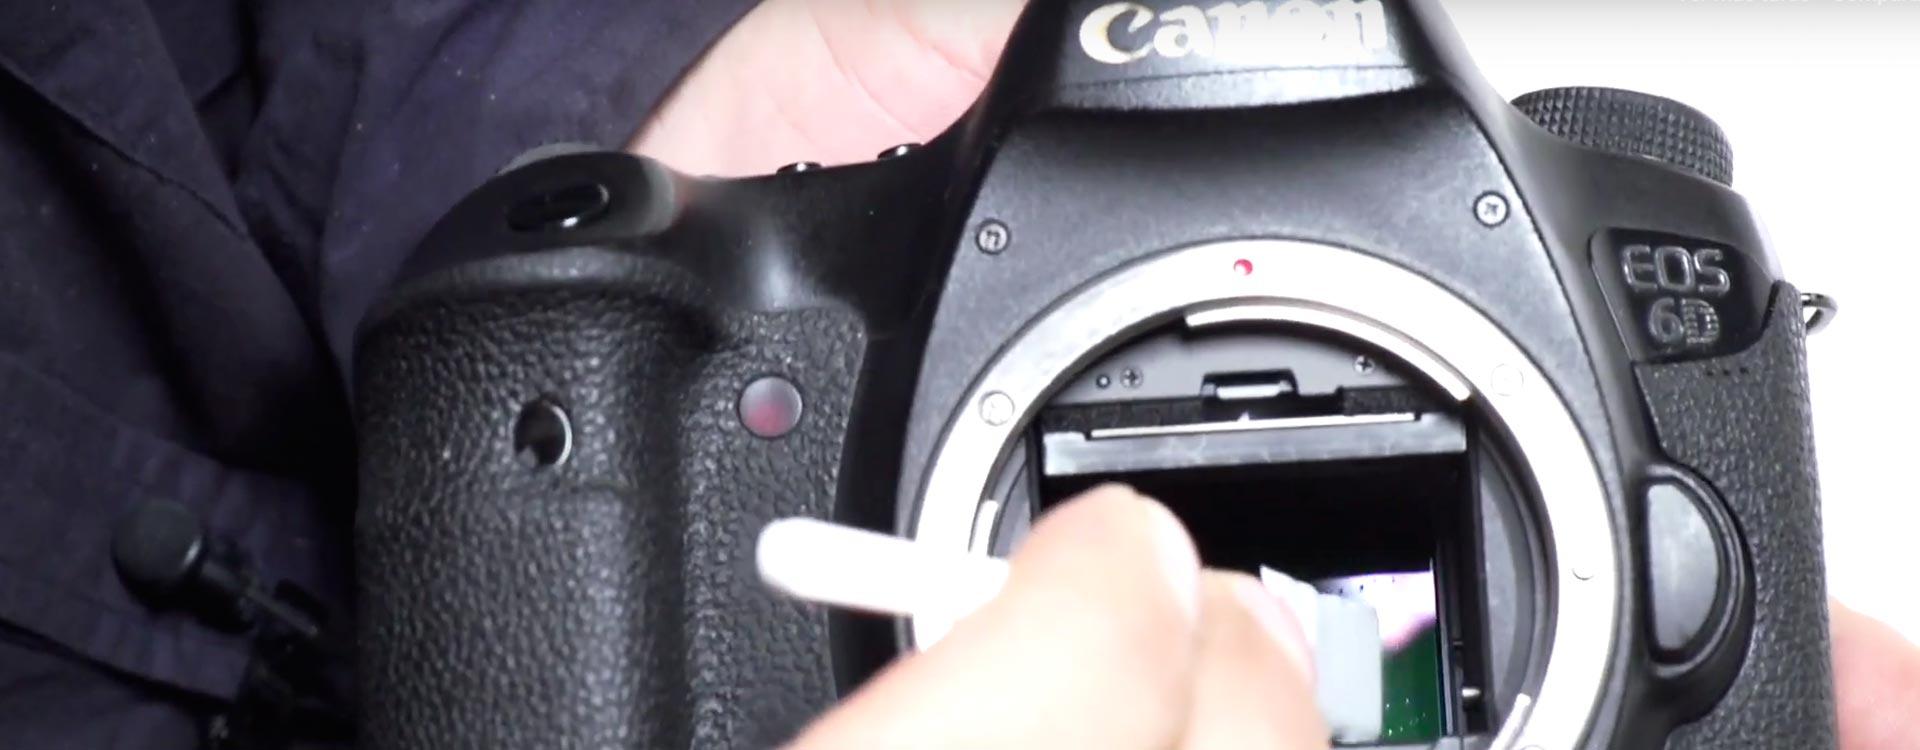 ¿Cómo limpiar el sensor de tu cámara de fotos tu mismo?